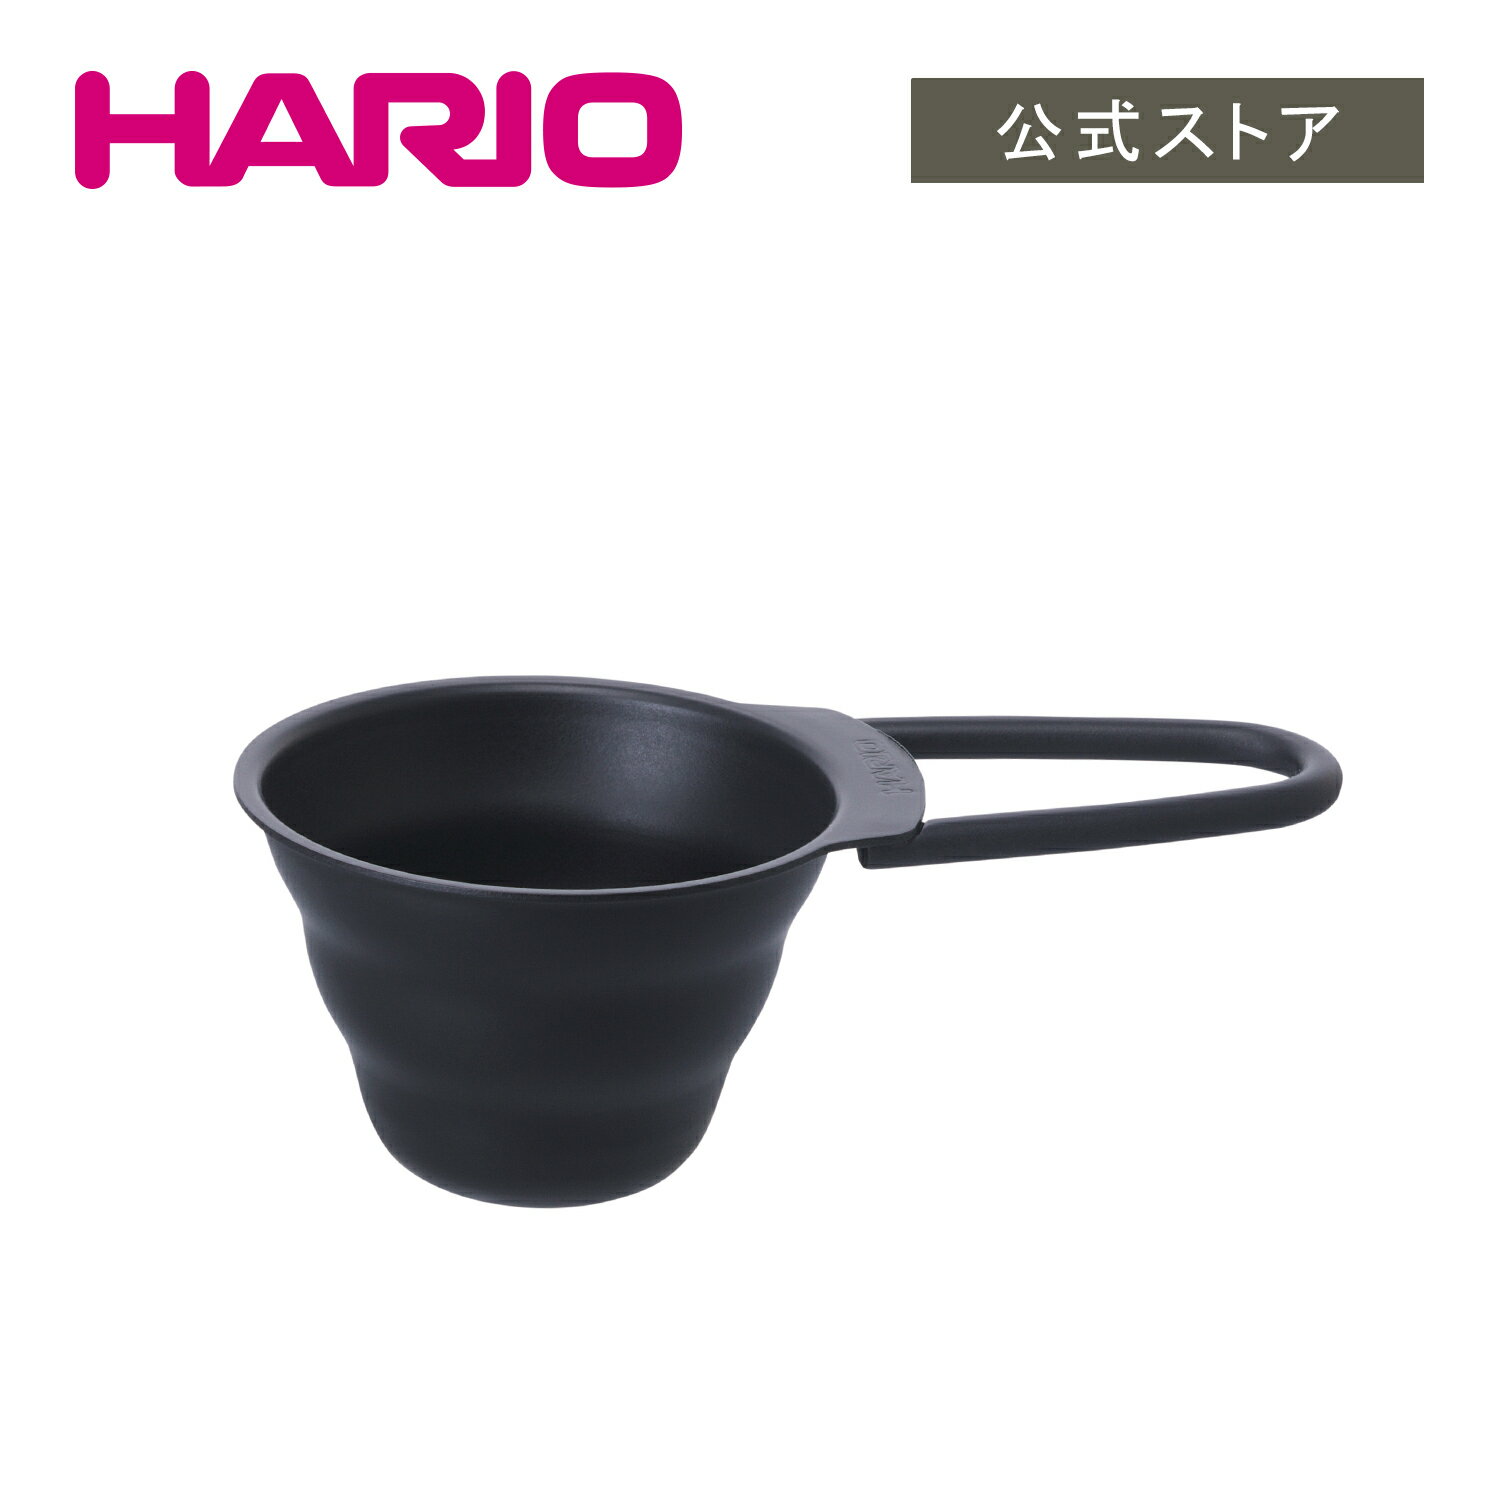 【公式ショップ】HARIO V60計量スプーン マットブラック かっこいい